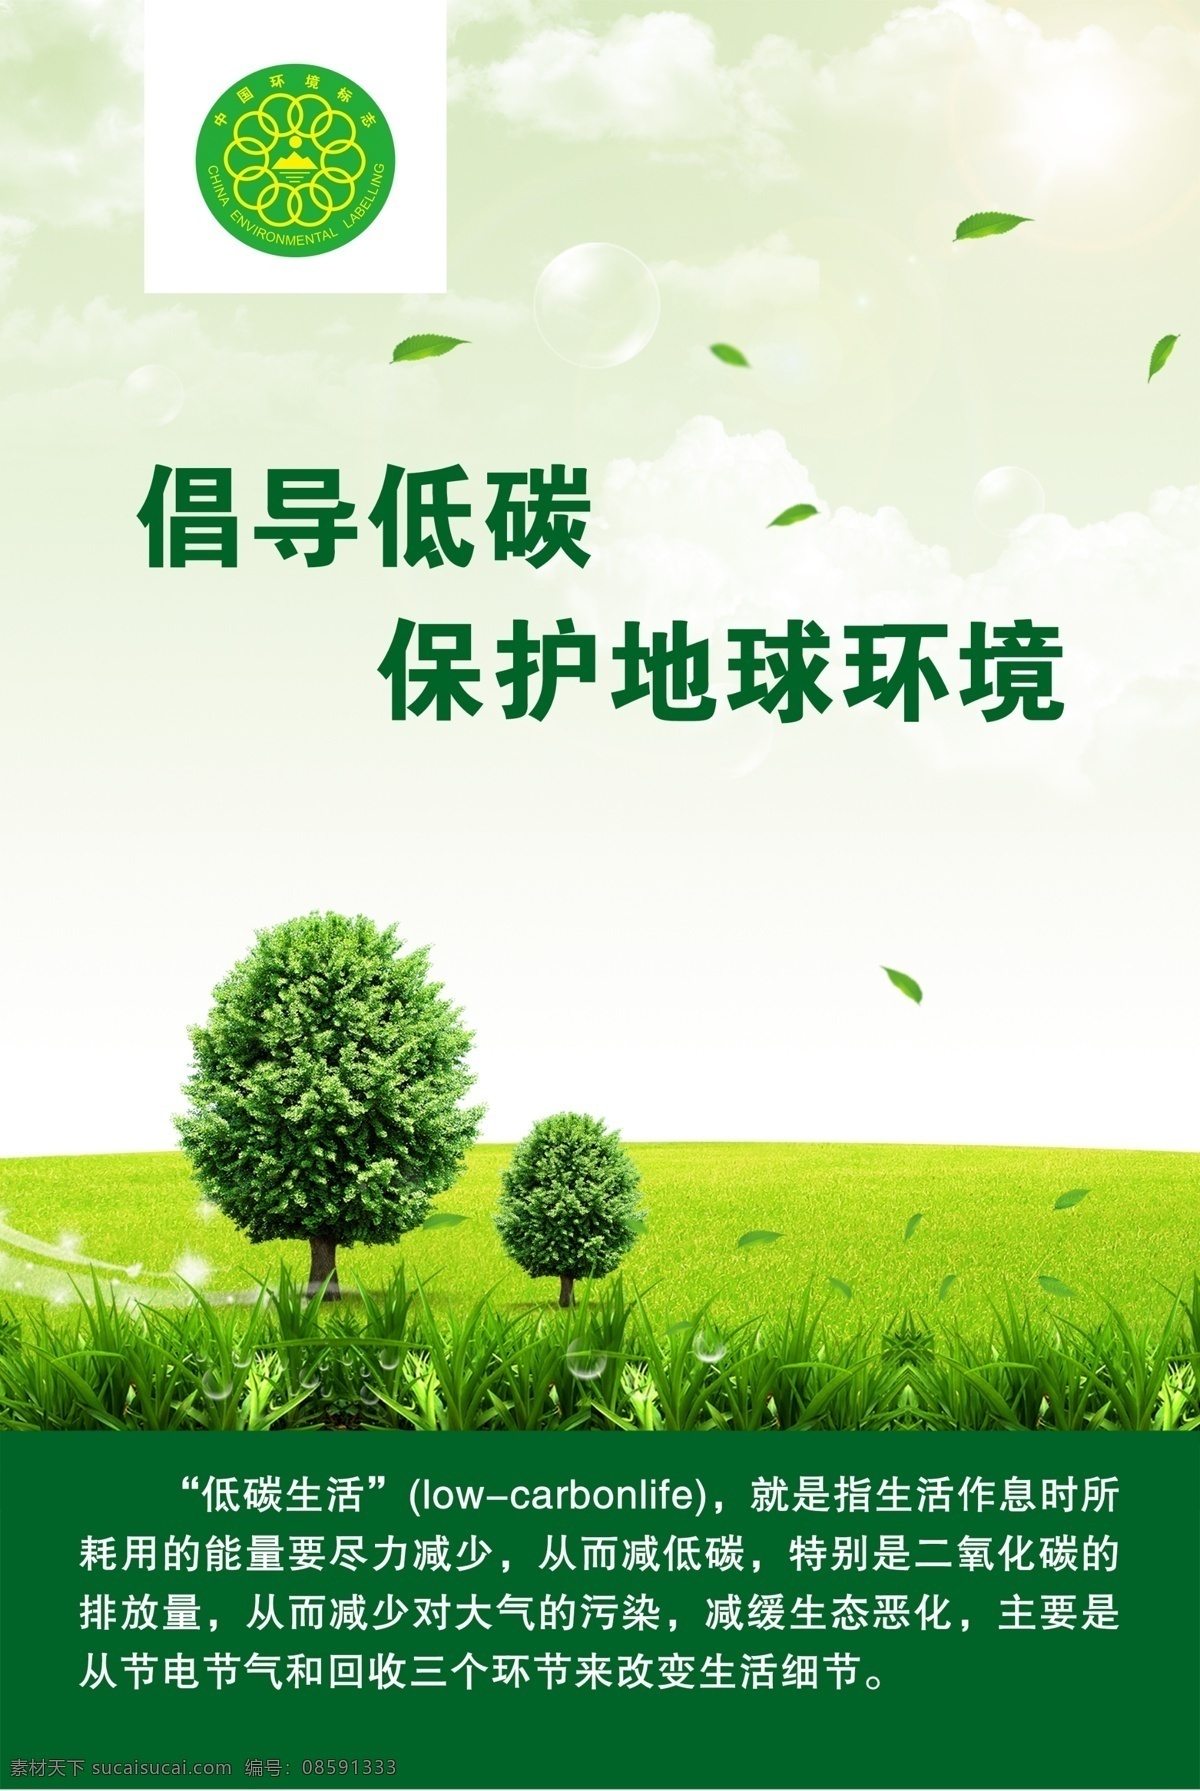 倡导低碳海报 绿色环保广告 中国环境标志 低碳 草地 绿叶 白云 光圈 泡泡 创意设计 保护地球环境 广告设计模板 源文件